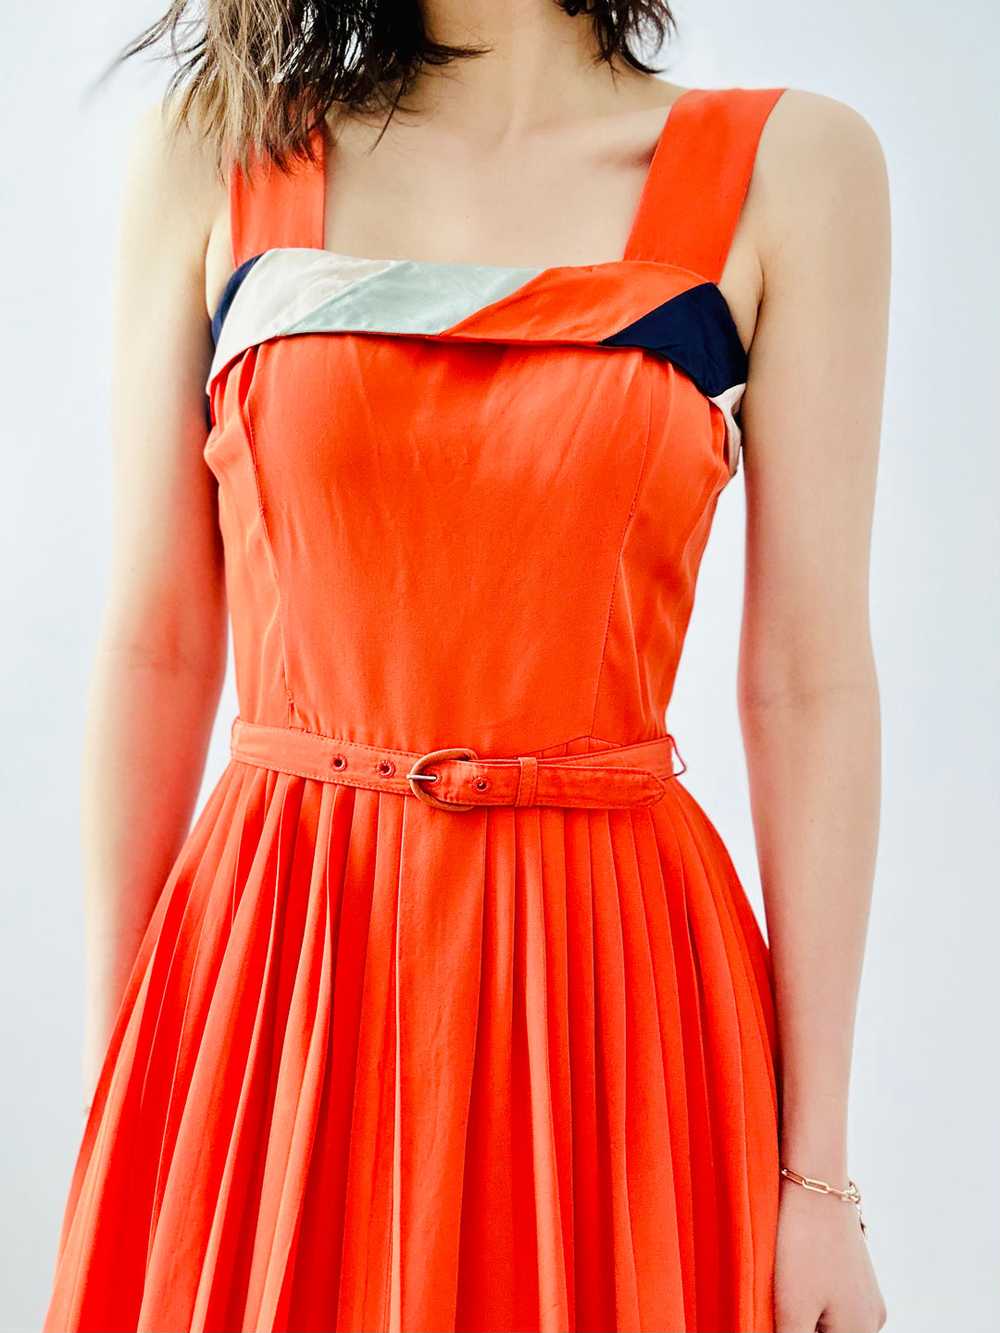 Vintage 1940s colorblock dress - image 8